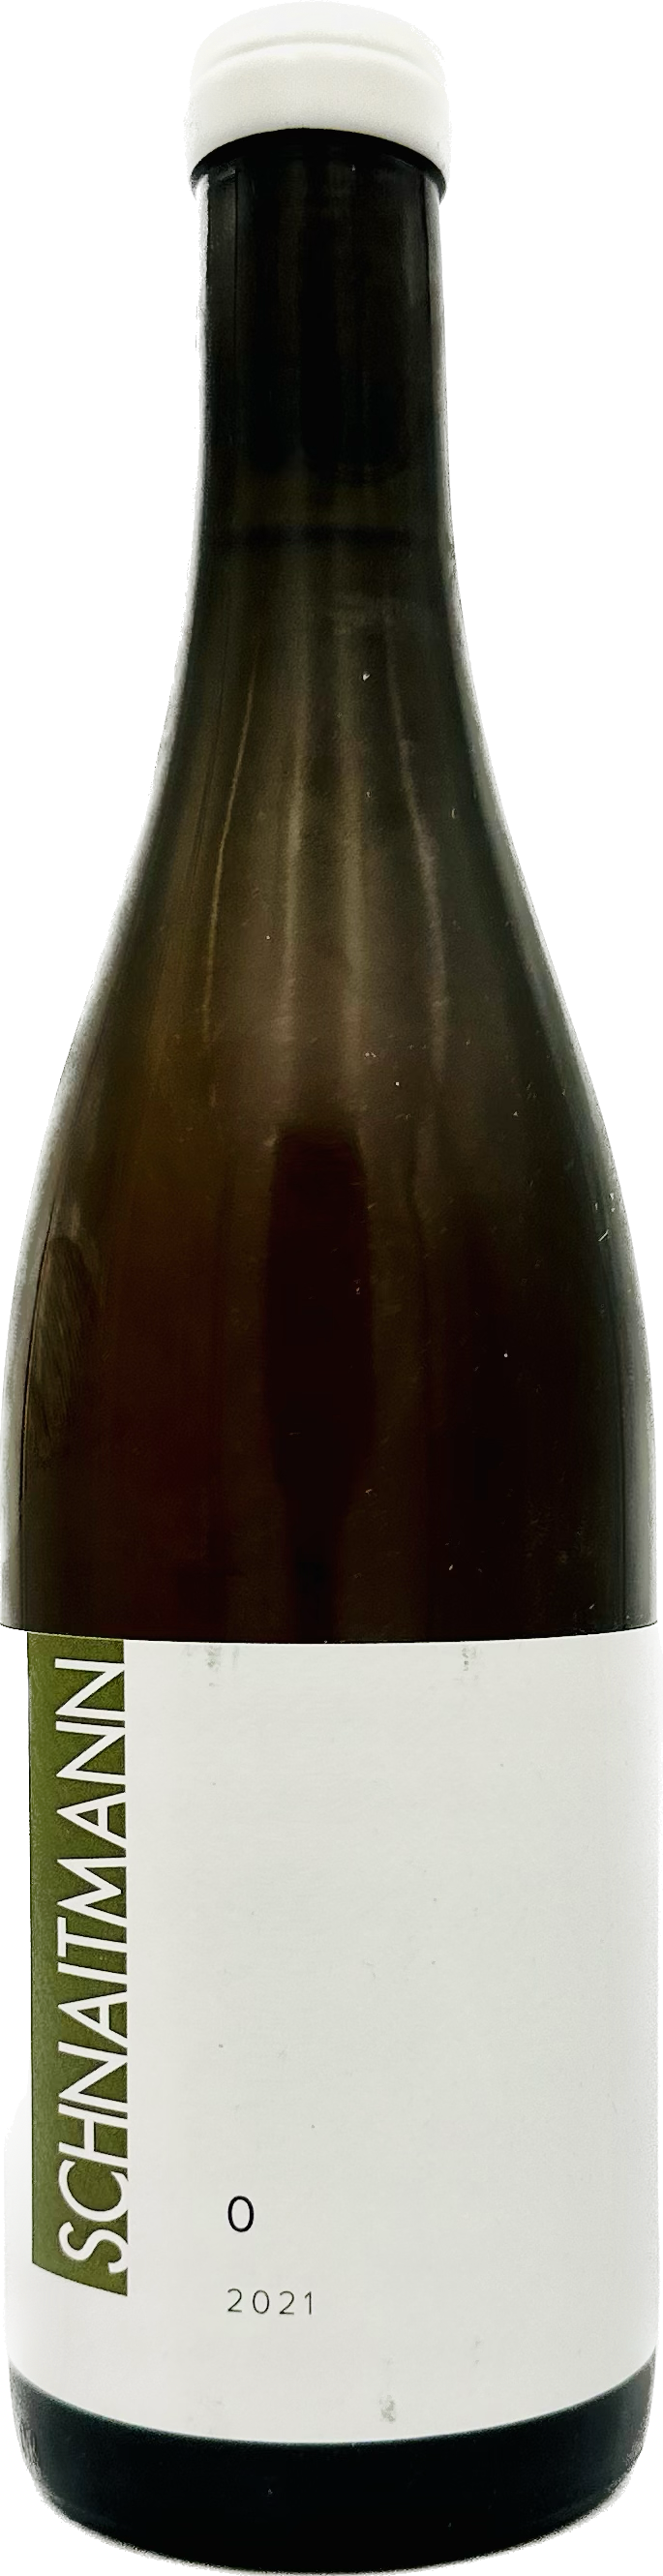 Weingut Schnaitmann O (Orangewein) 2021